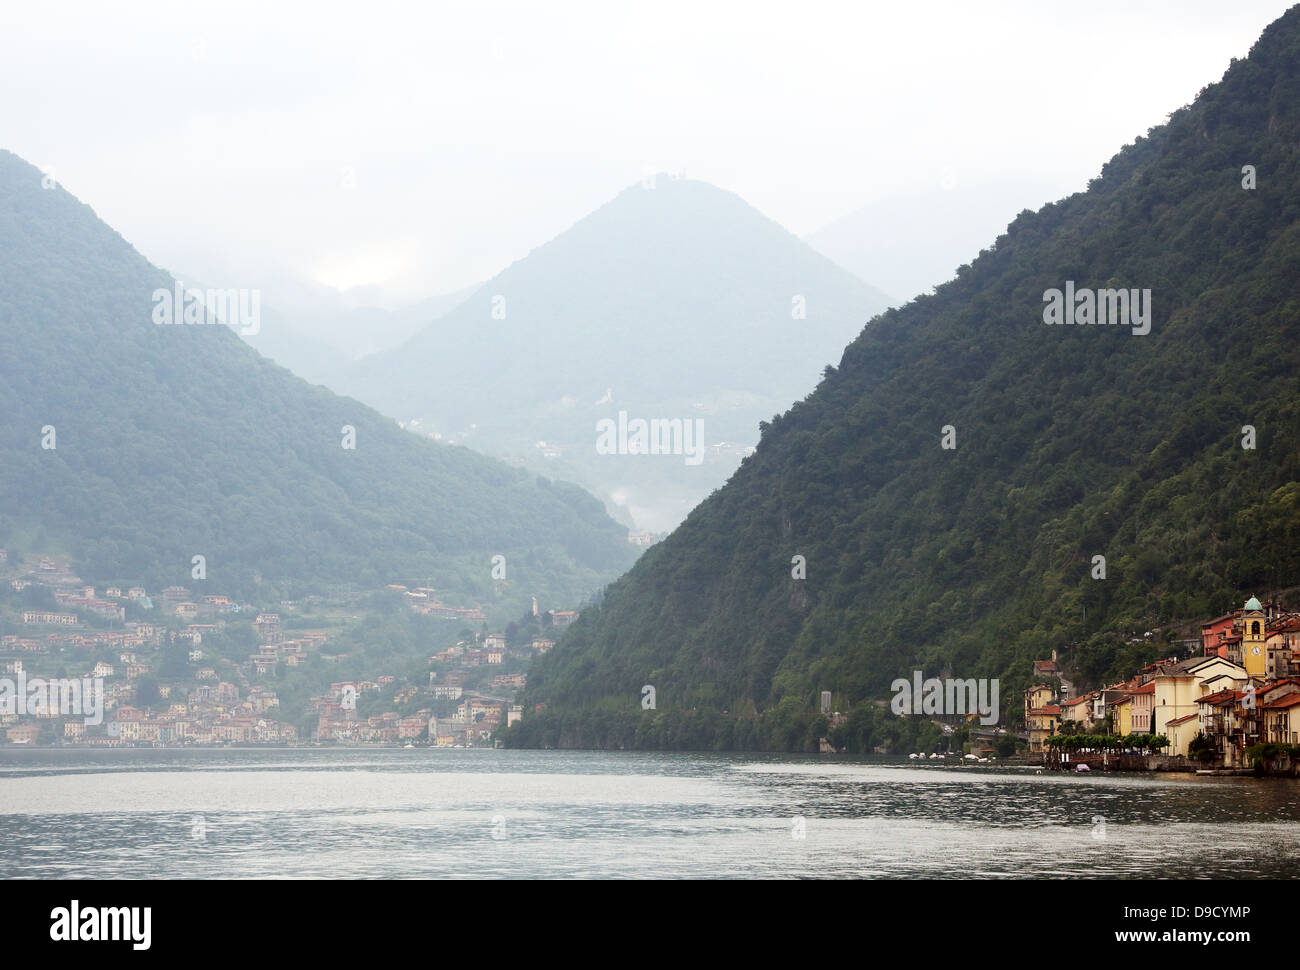 Le montagne si elevano al di sopra di villaggi lungo le rive del lago di Como in Italia settentrionale Foto Stock